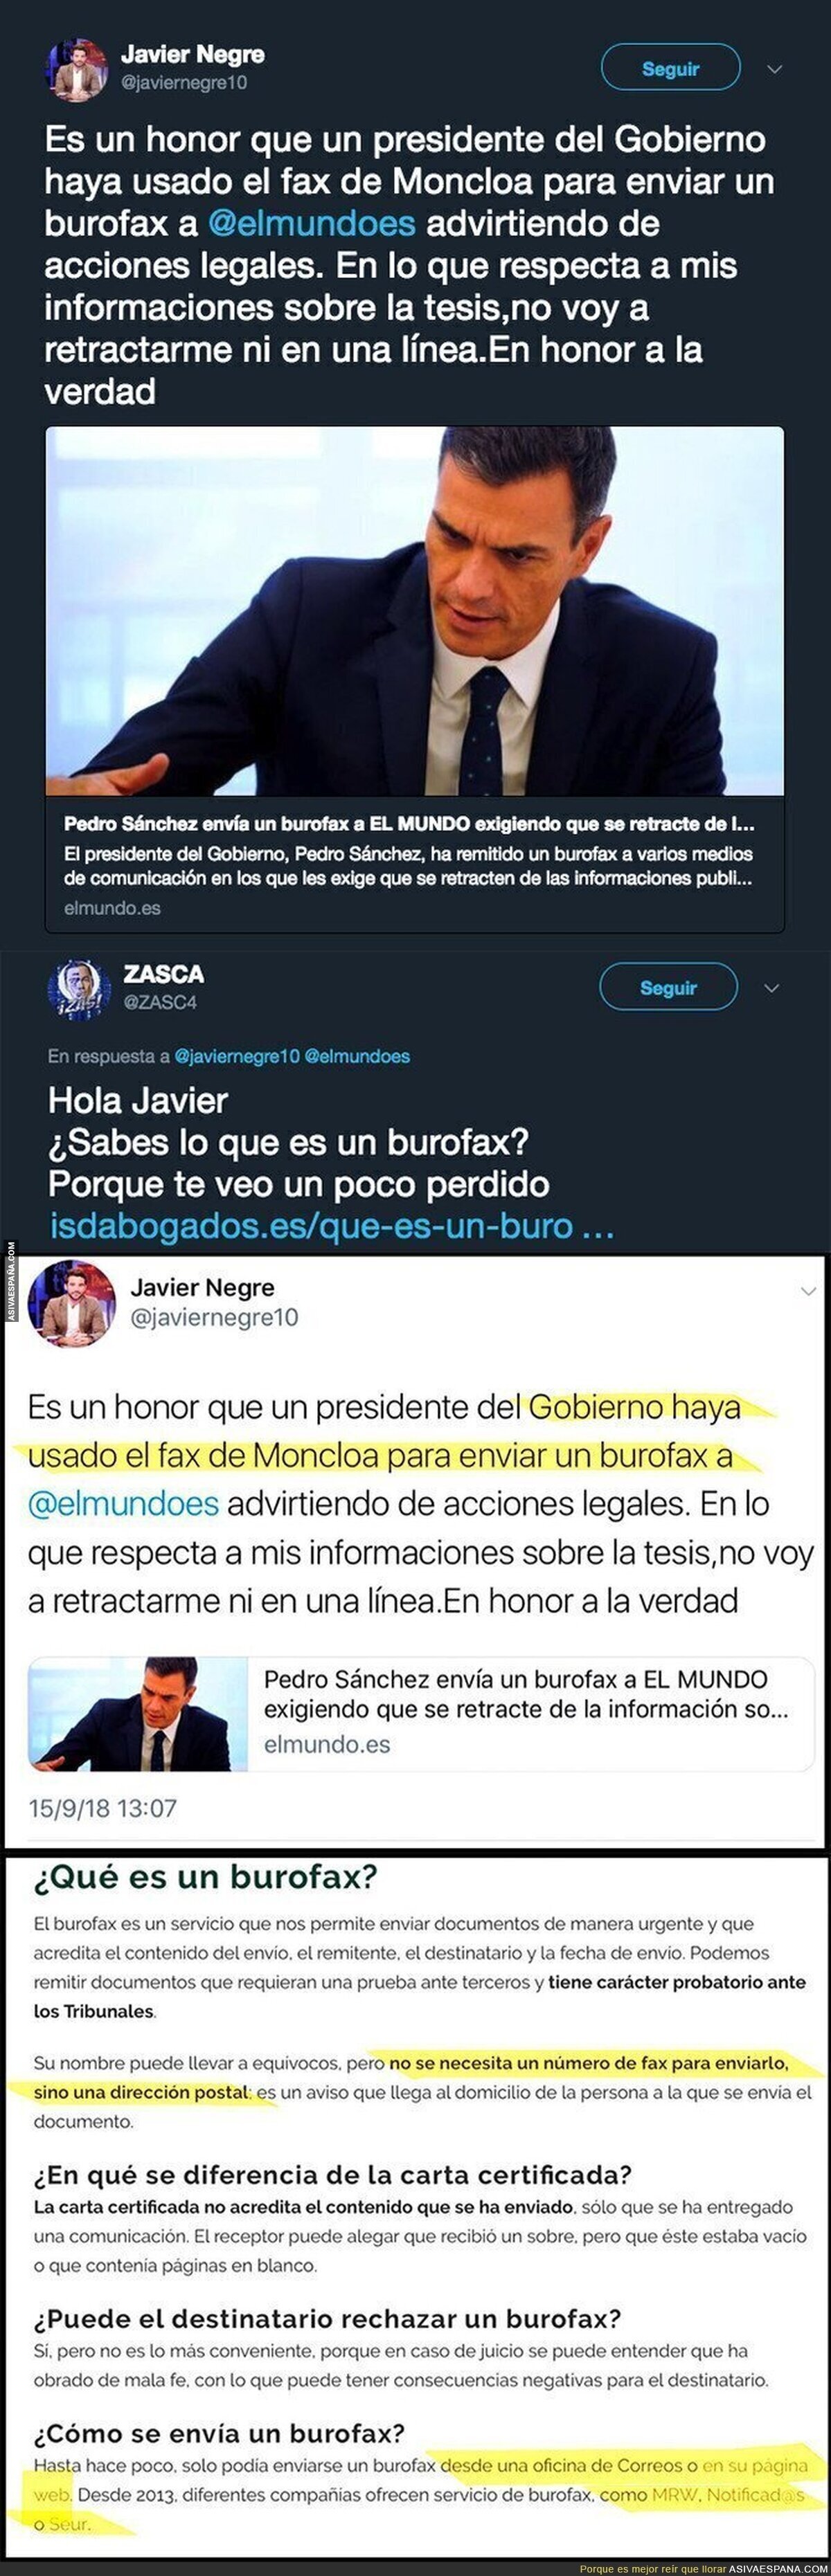 El periodista Javier Negre intenta ir dando lecciones a Pedro Sánchez y no sabe ni los conceptos básicos